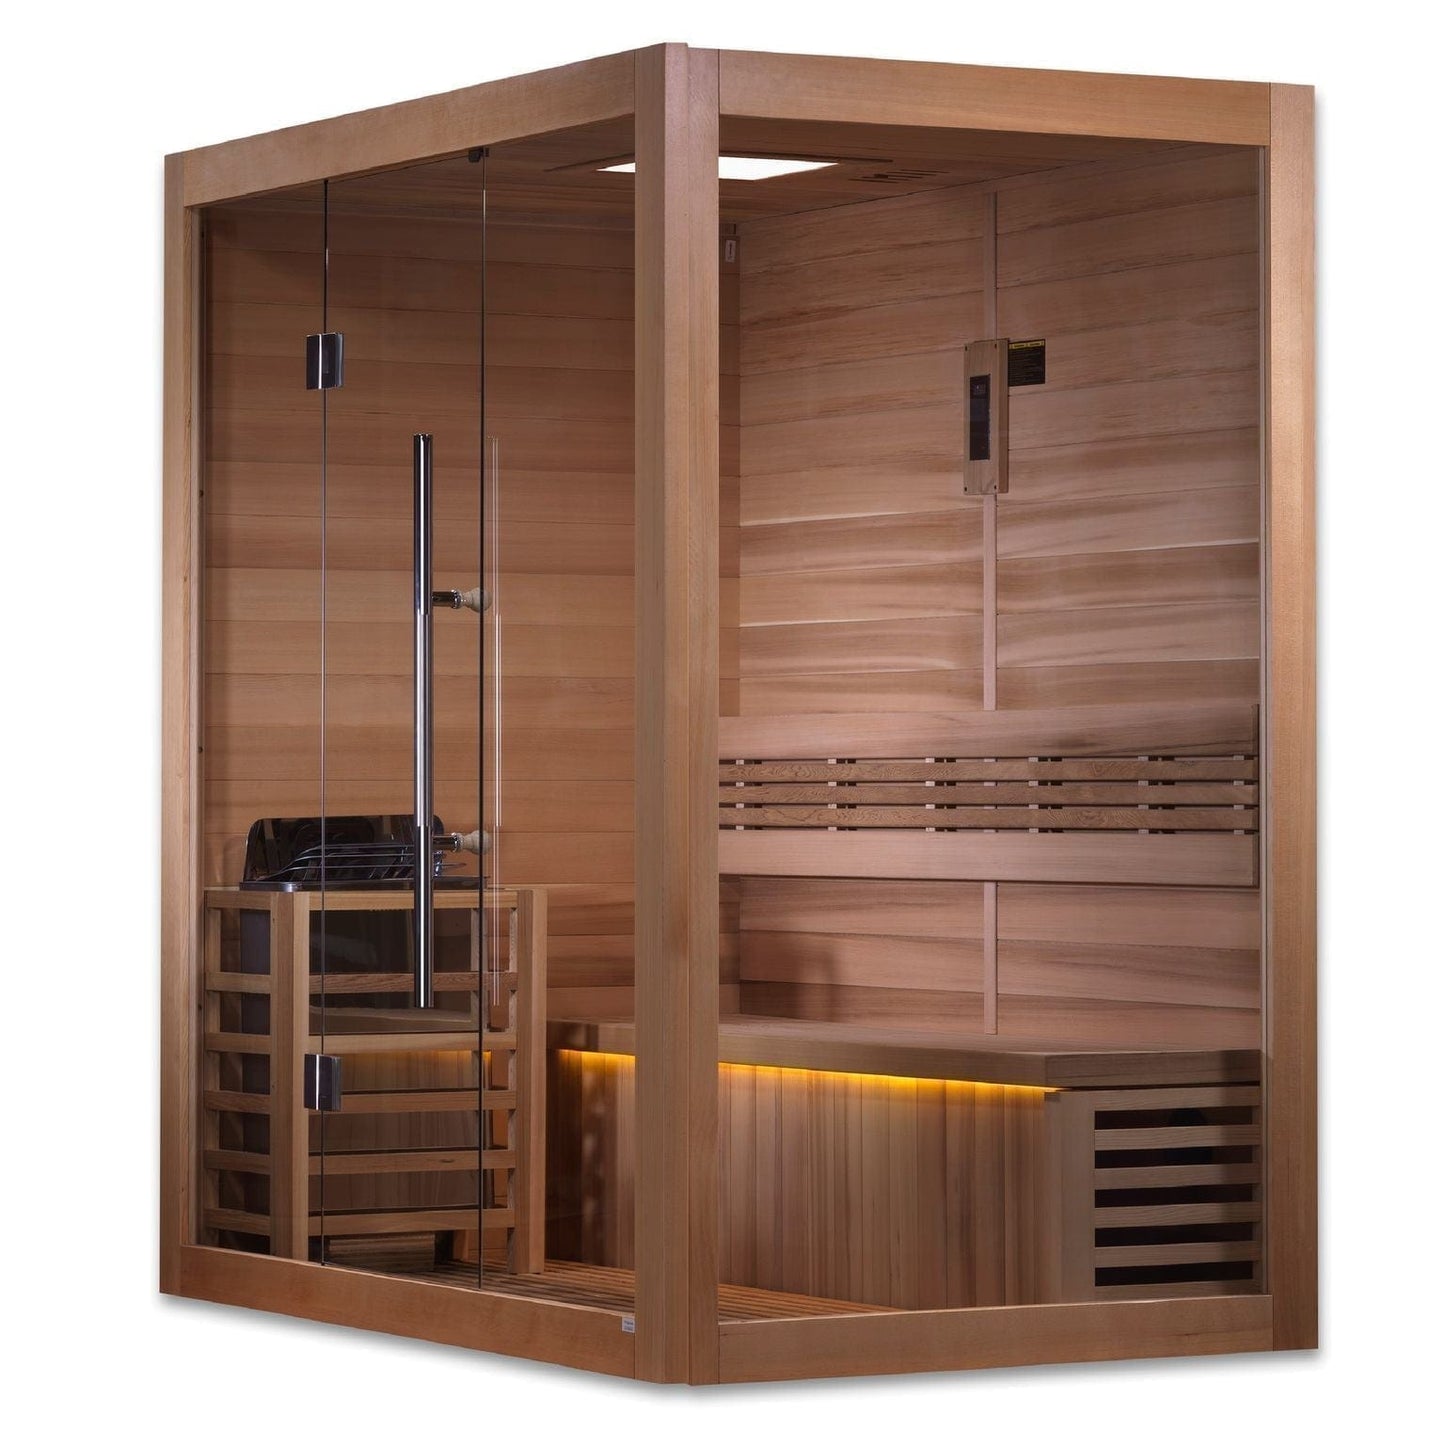 Golden Design Golden Designs Forssa Edition 3 Person Traditional Steam Sauna in Canadian Red Cedar | GDI-7203-01